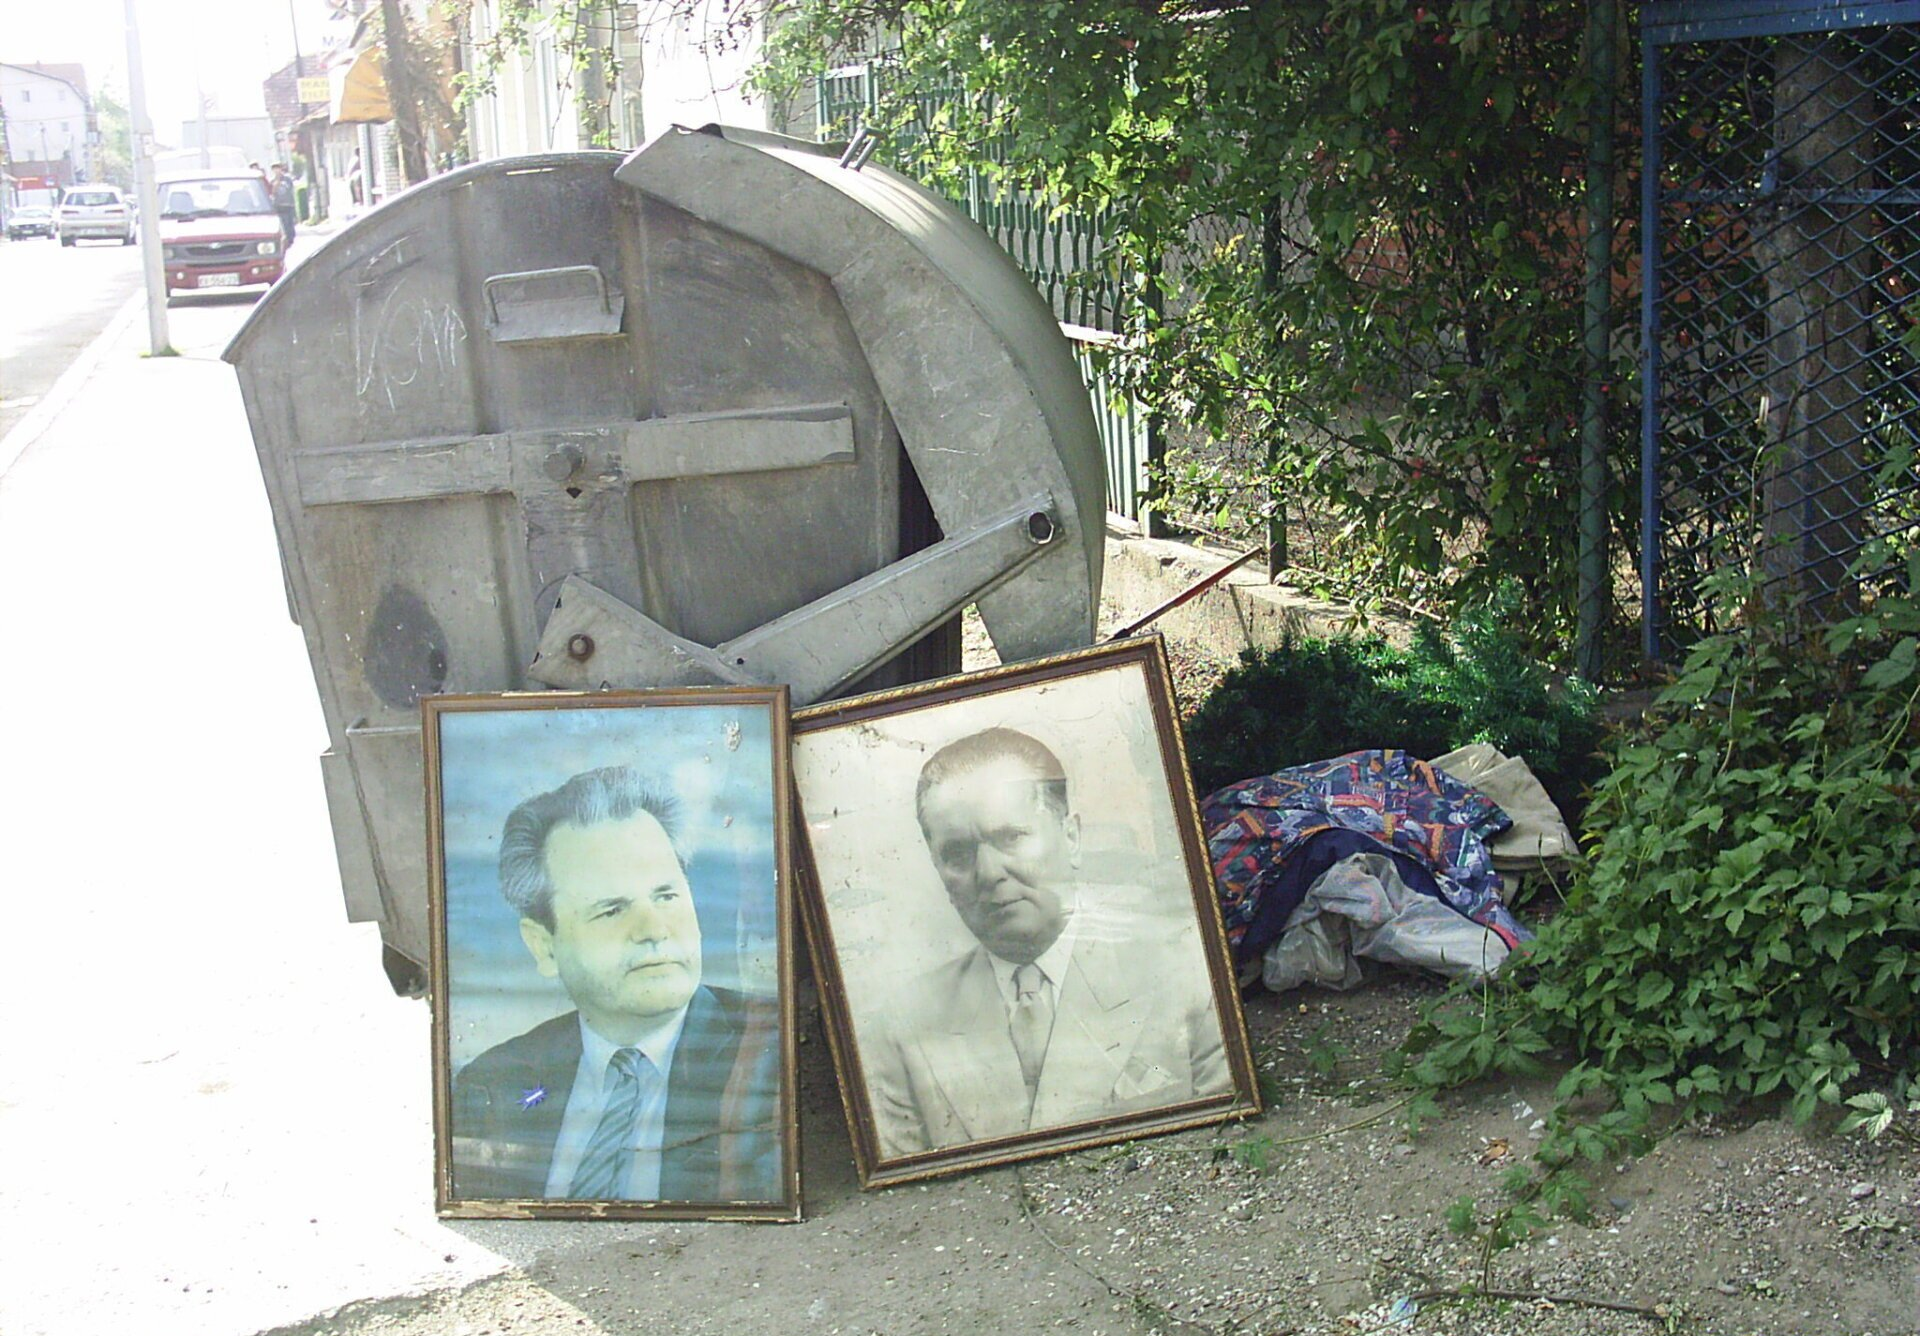 Conteneur urbain à ordures ménagères dans une rue en Serbie près duquel ont été abandonnés de vieux portraits de Tito et de Milosevic. Copyright www.pogledi.fr